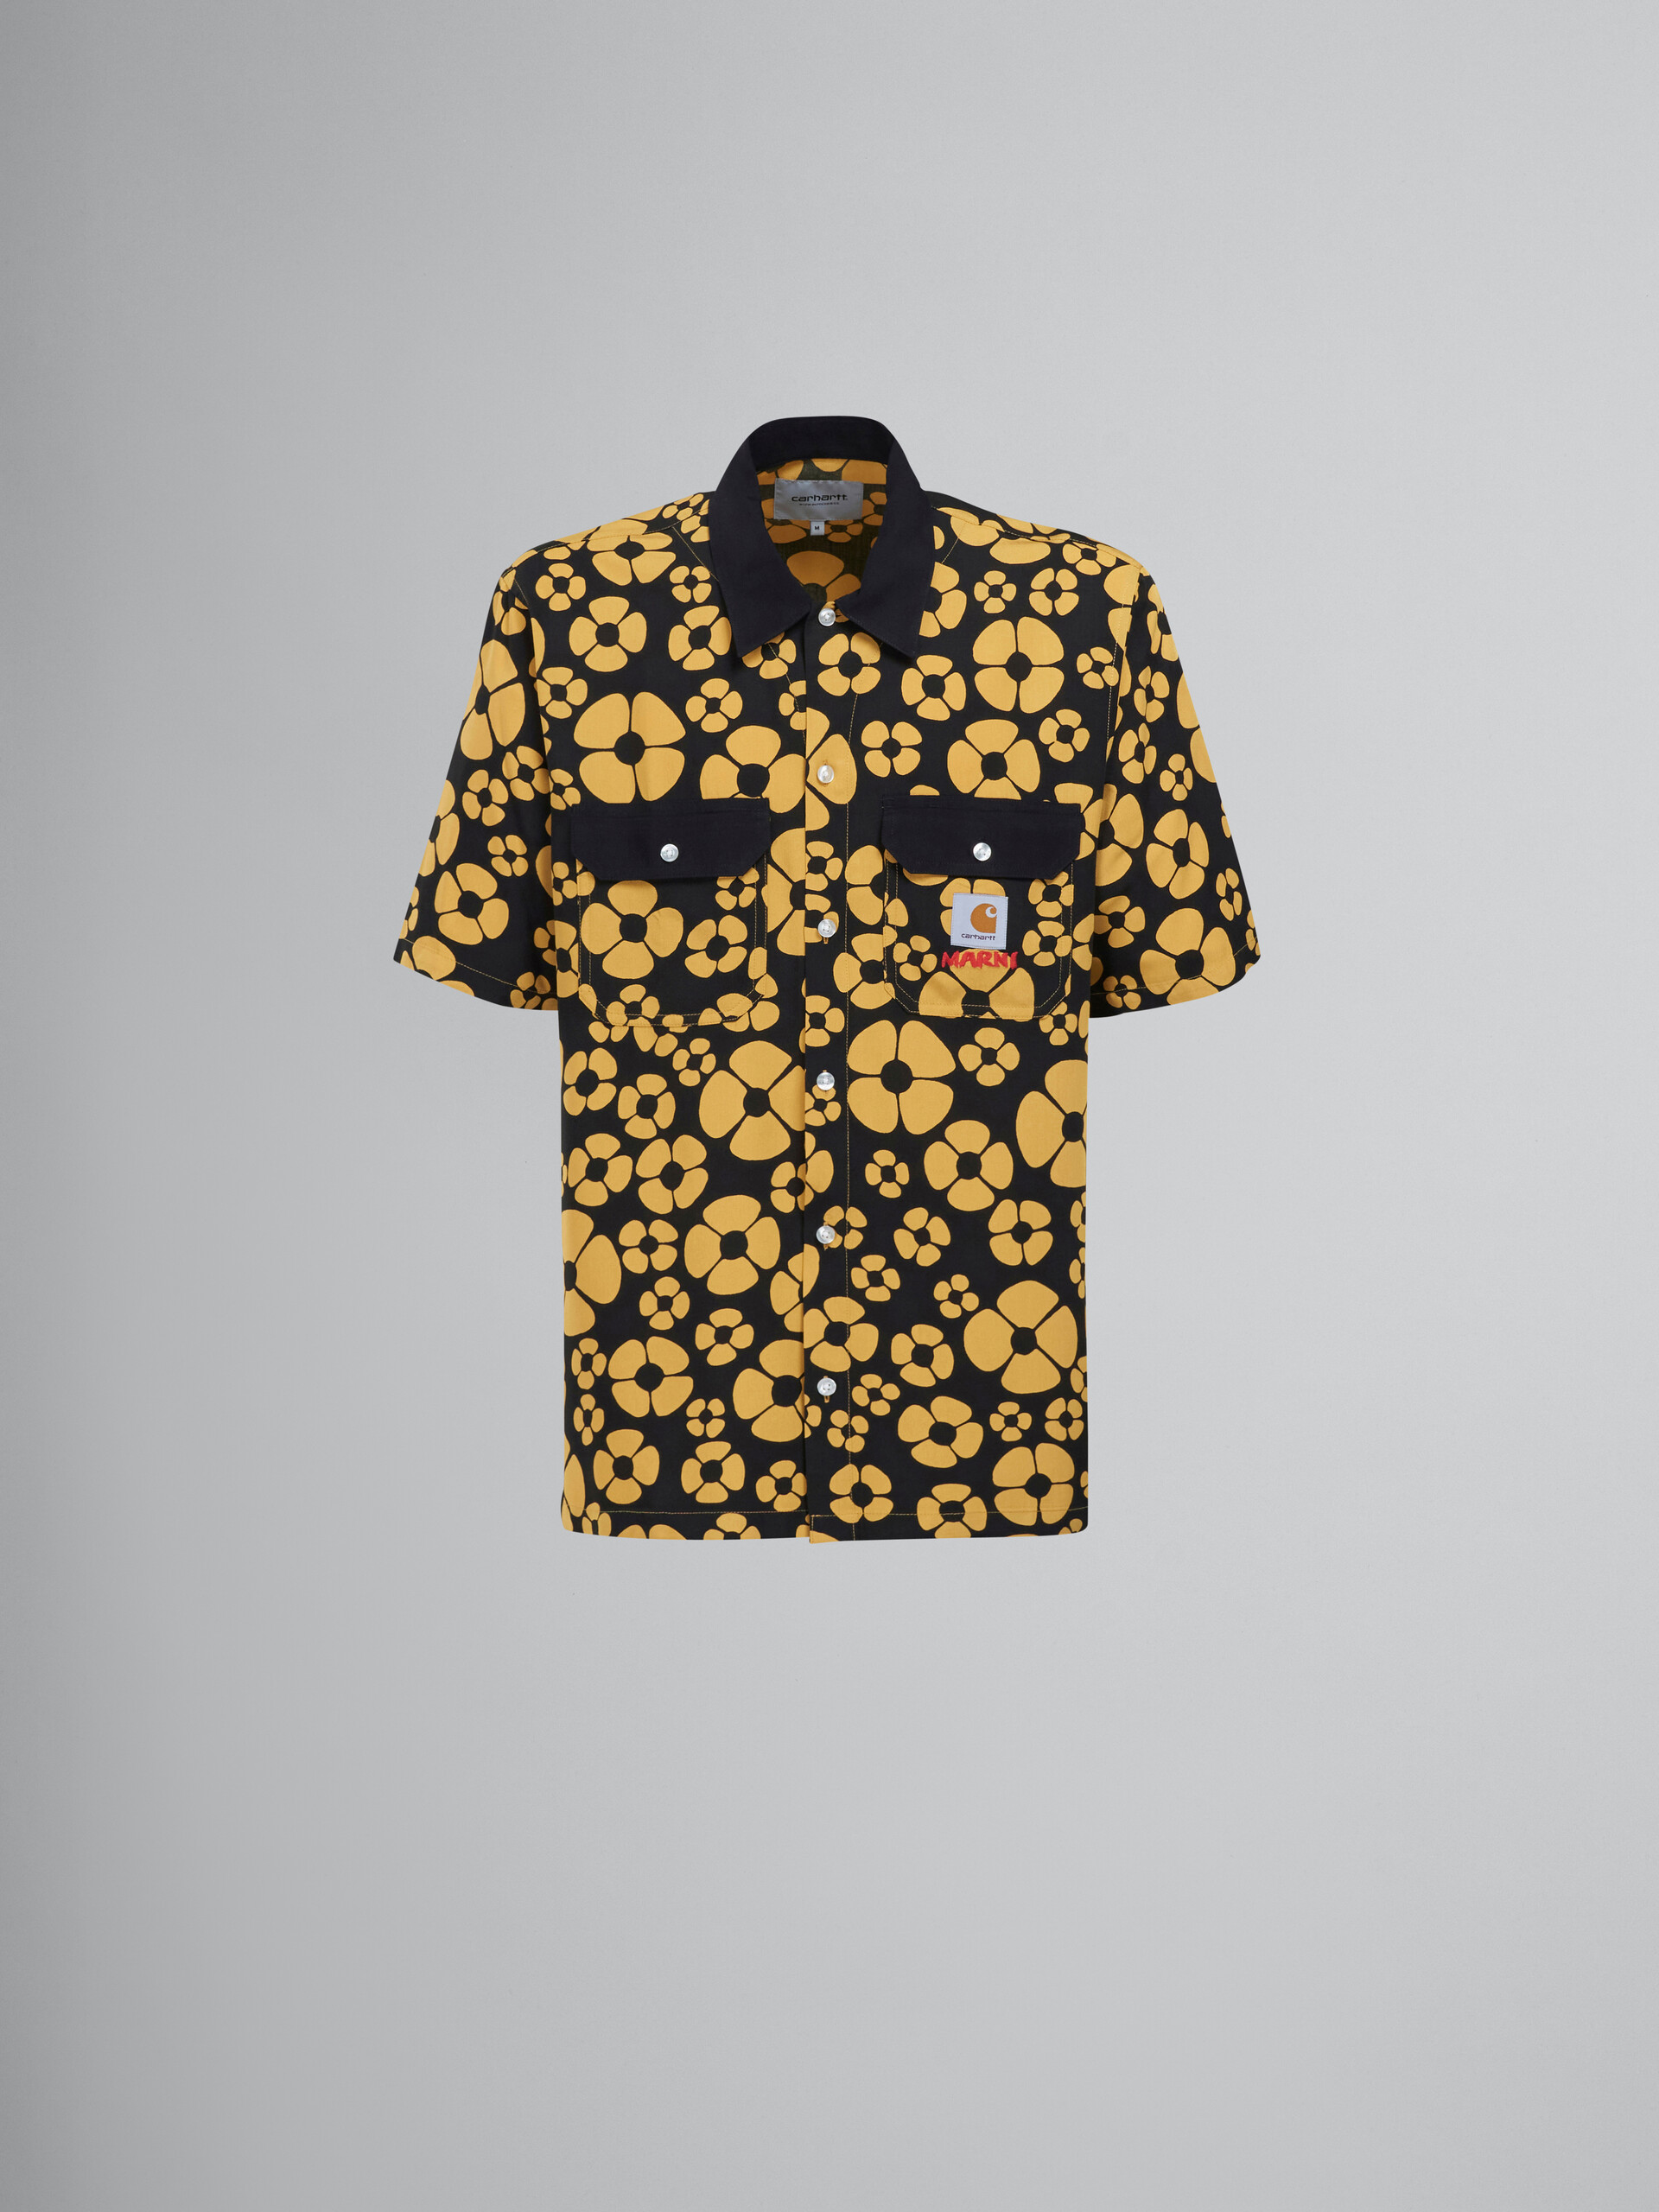 MARNI x CARHARTT WIP - gelbes, kurzärmeliges, geblümtes Shirt - Hemden - Image 1